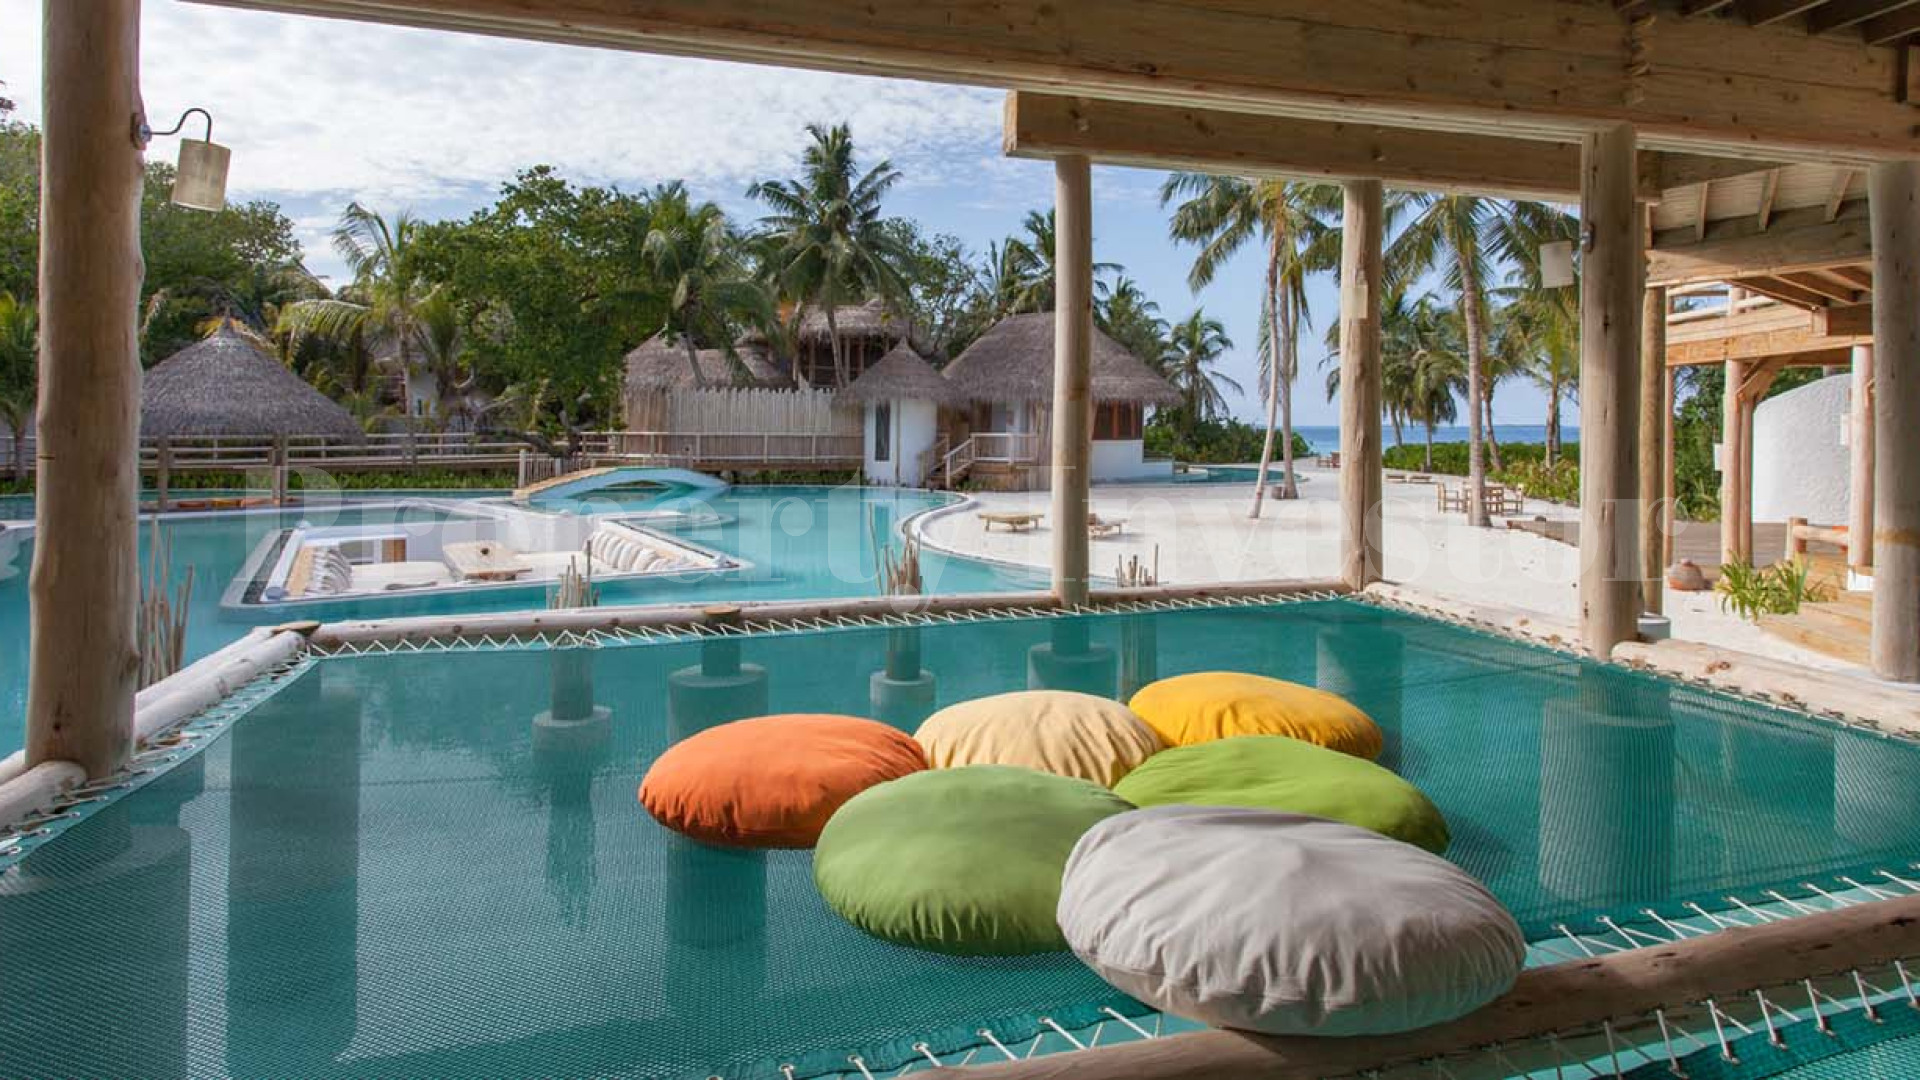 Эксклюзивная вилла с 9 спальнями на пляже со своим бассейном на Мальдивах